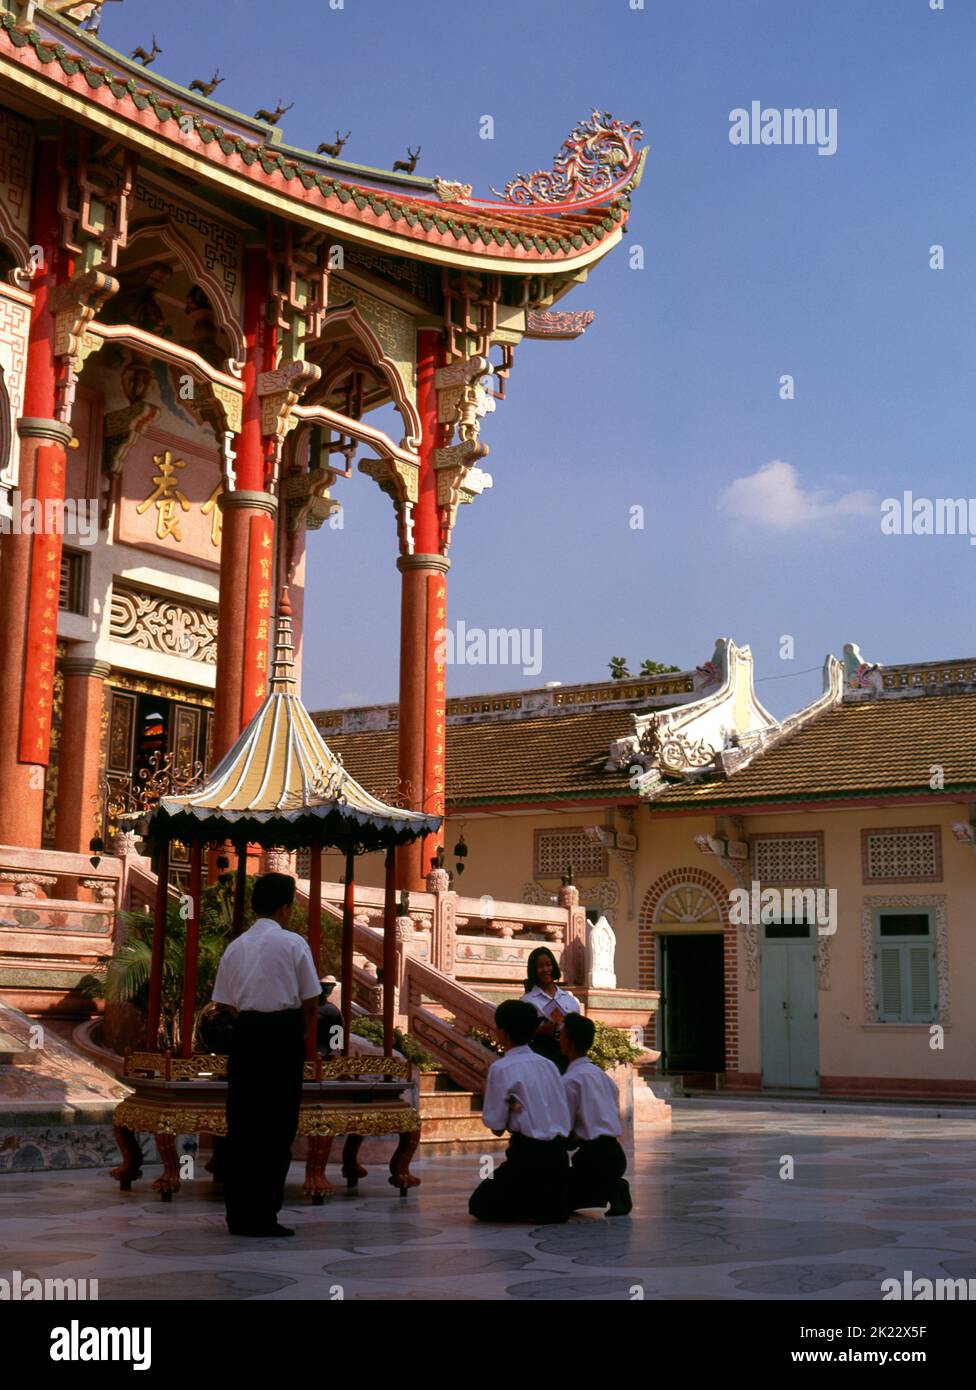 Tailandia: El principal viharn (sala de asambleas), Wat Pho Maen Khunaram, Bangkok. Wat Pho Maen Khunaram es un templo budista Mahayana construido en 1959. Mezcla los estilos arquitectónicos tailandés, chino y tibetano. Foto de stock